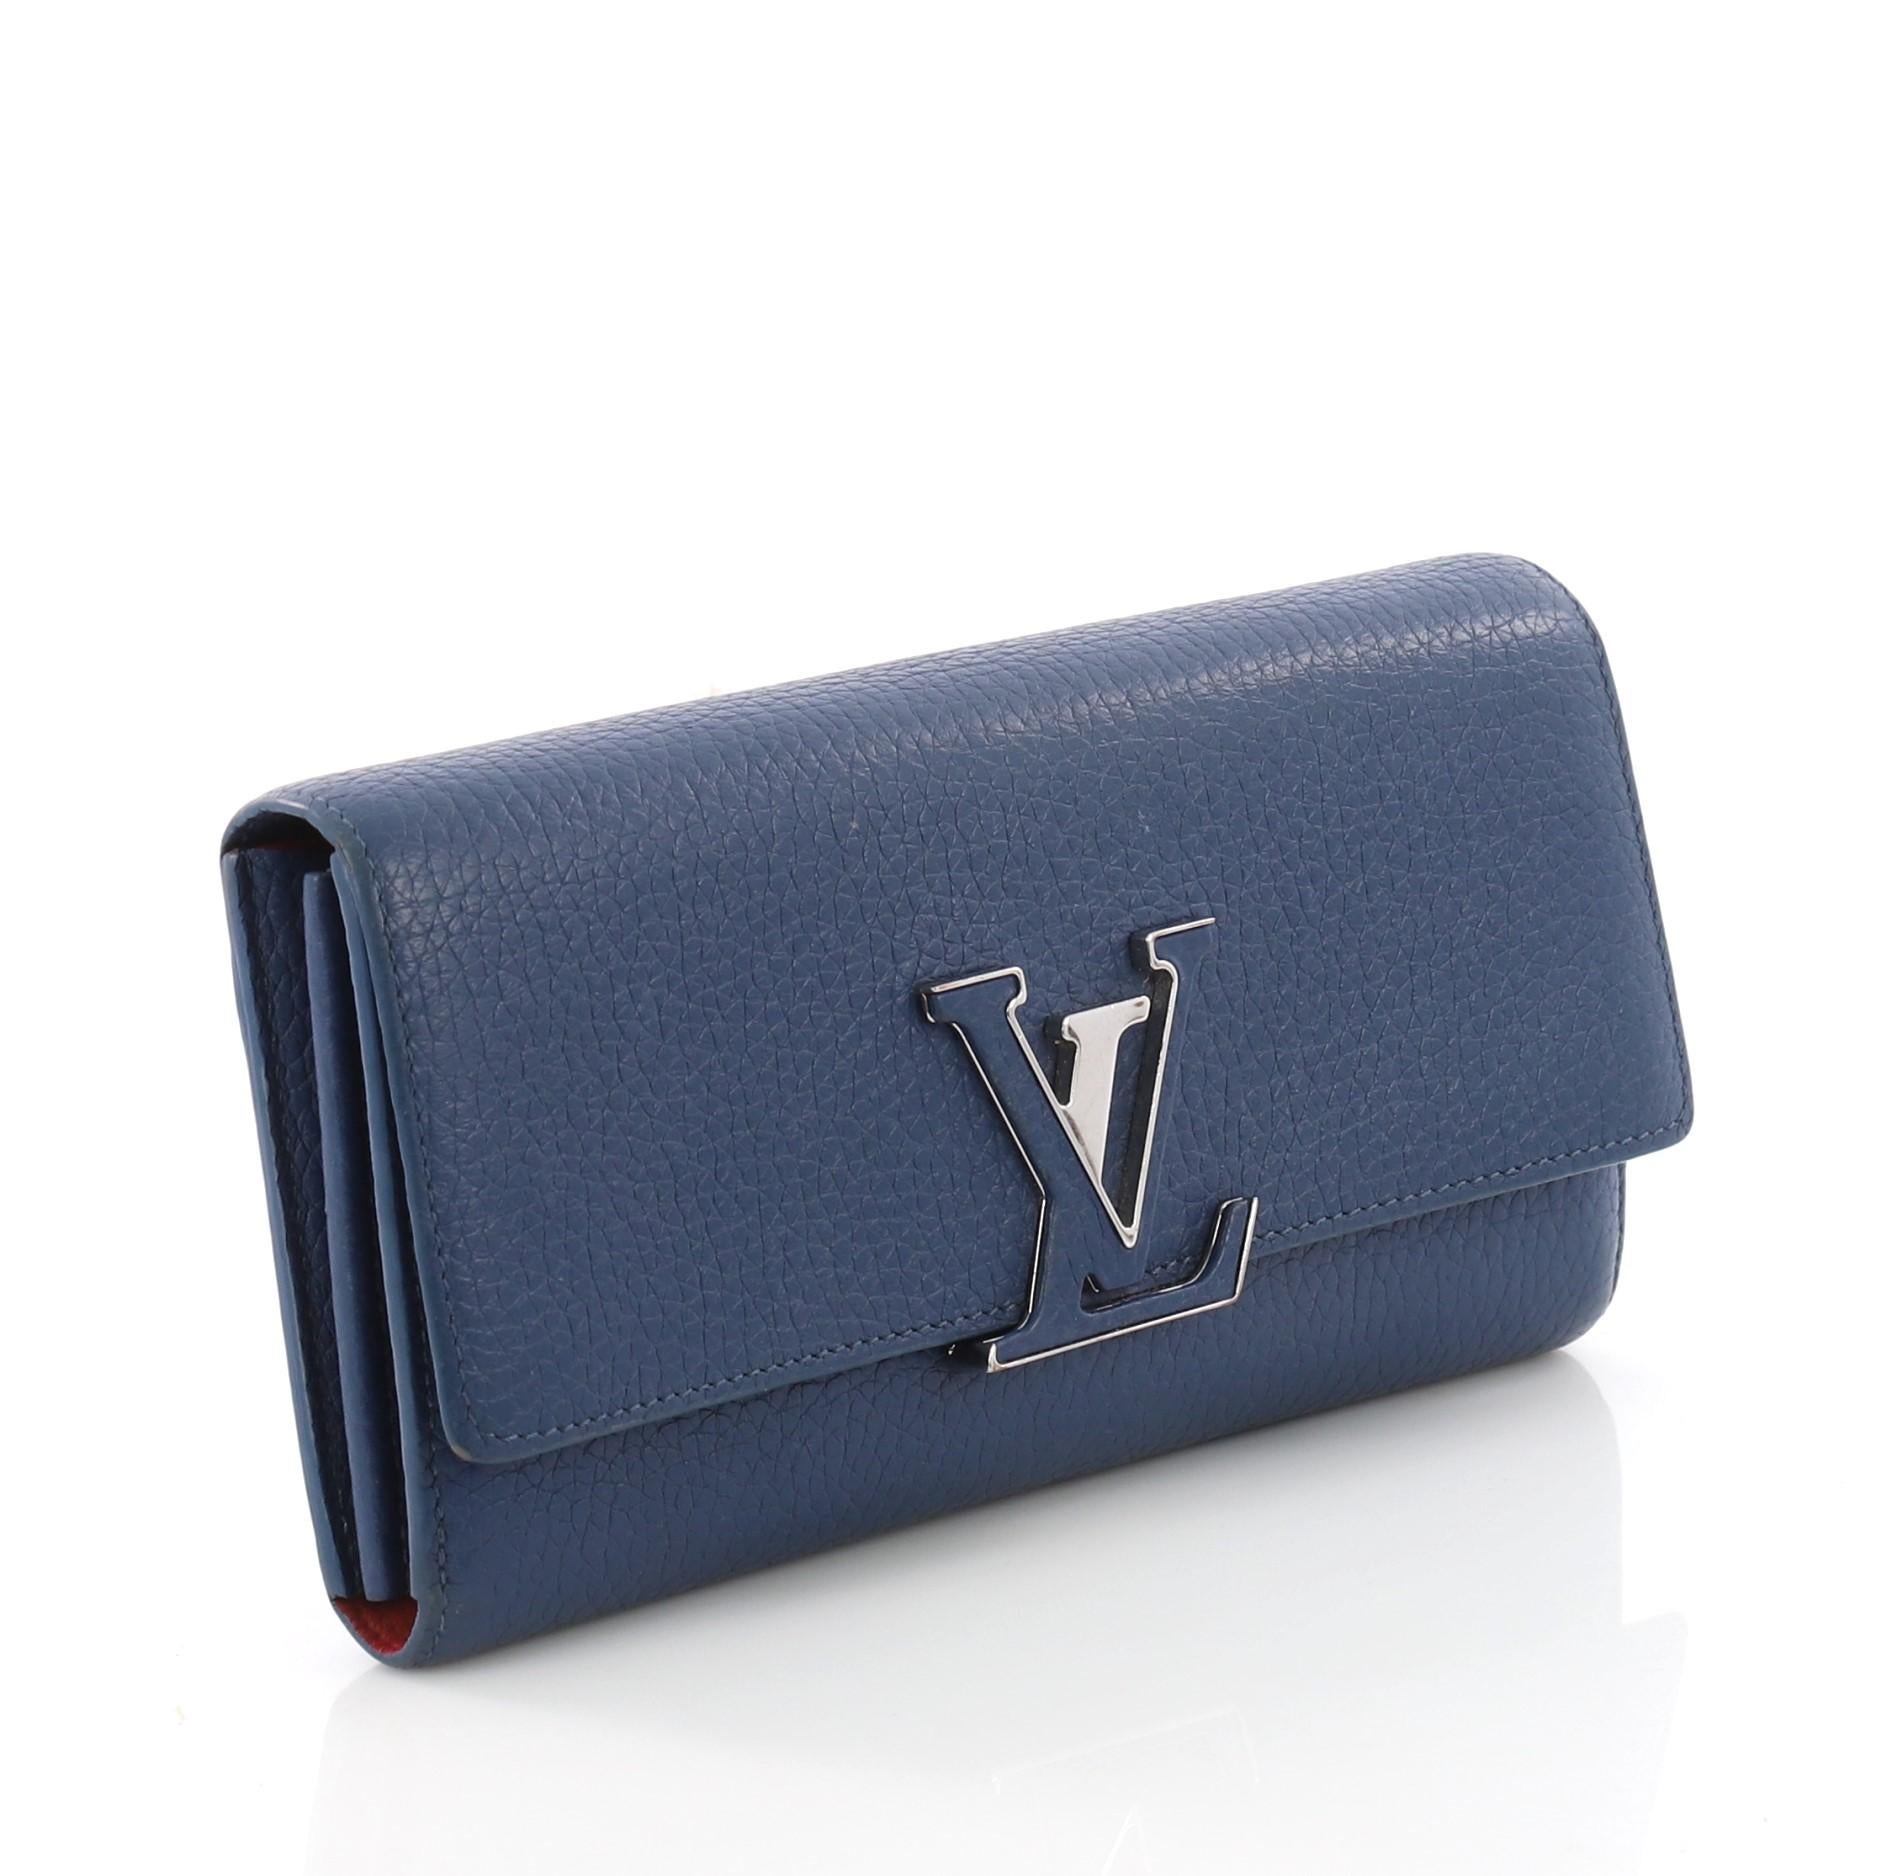 Purple Louis Vuitton Capucines Wallet Leather